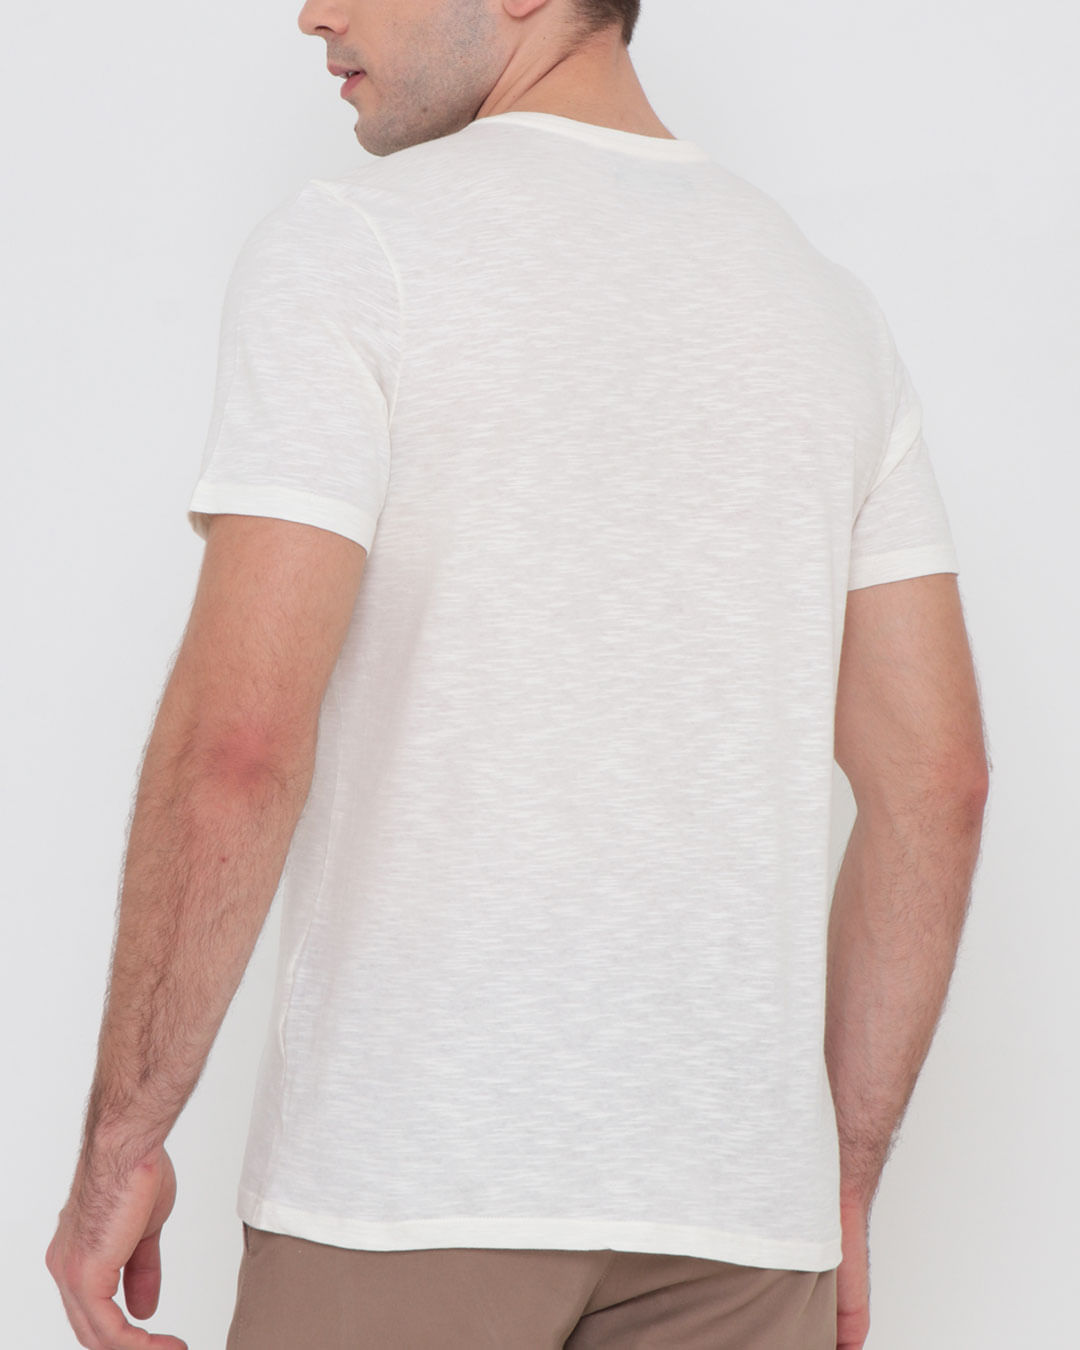 Camiseta-Masculina-Estampa-Folha-Flame-Off-White